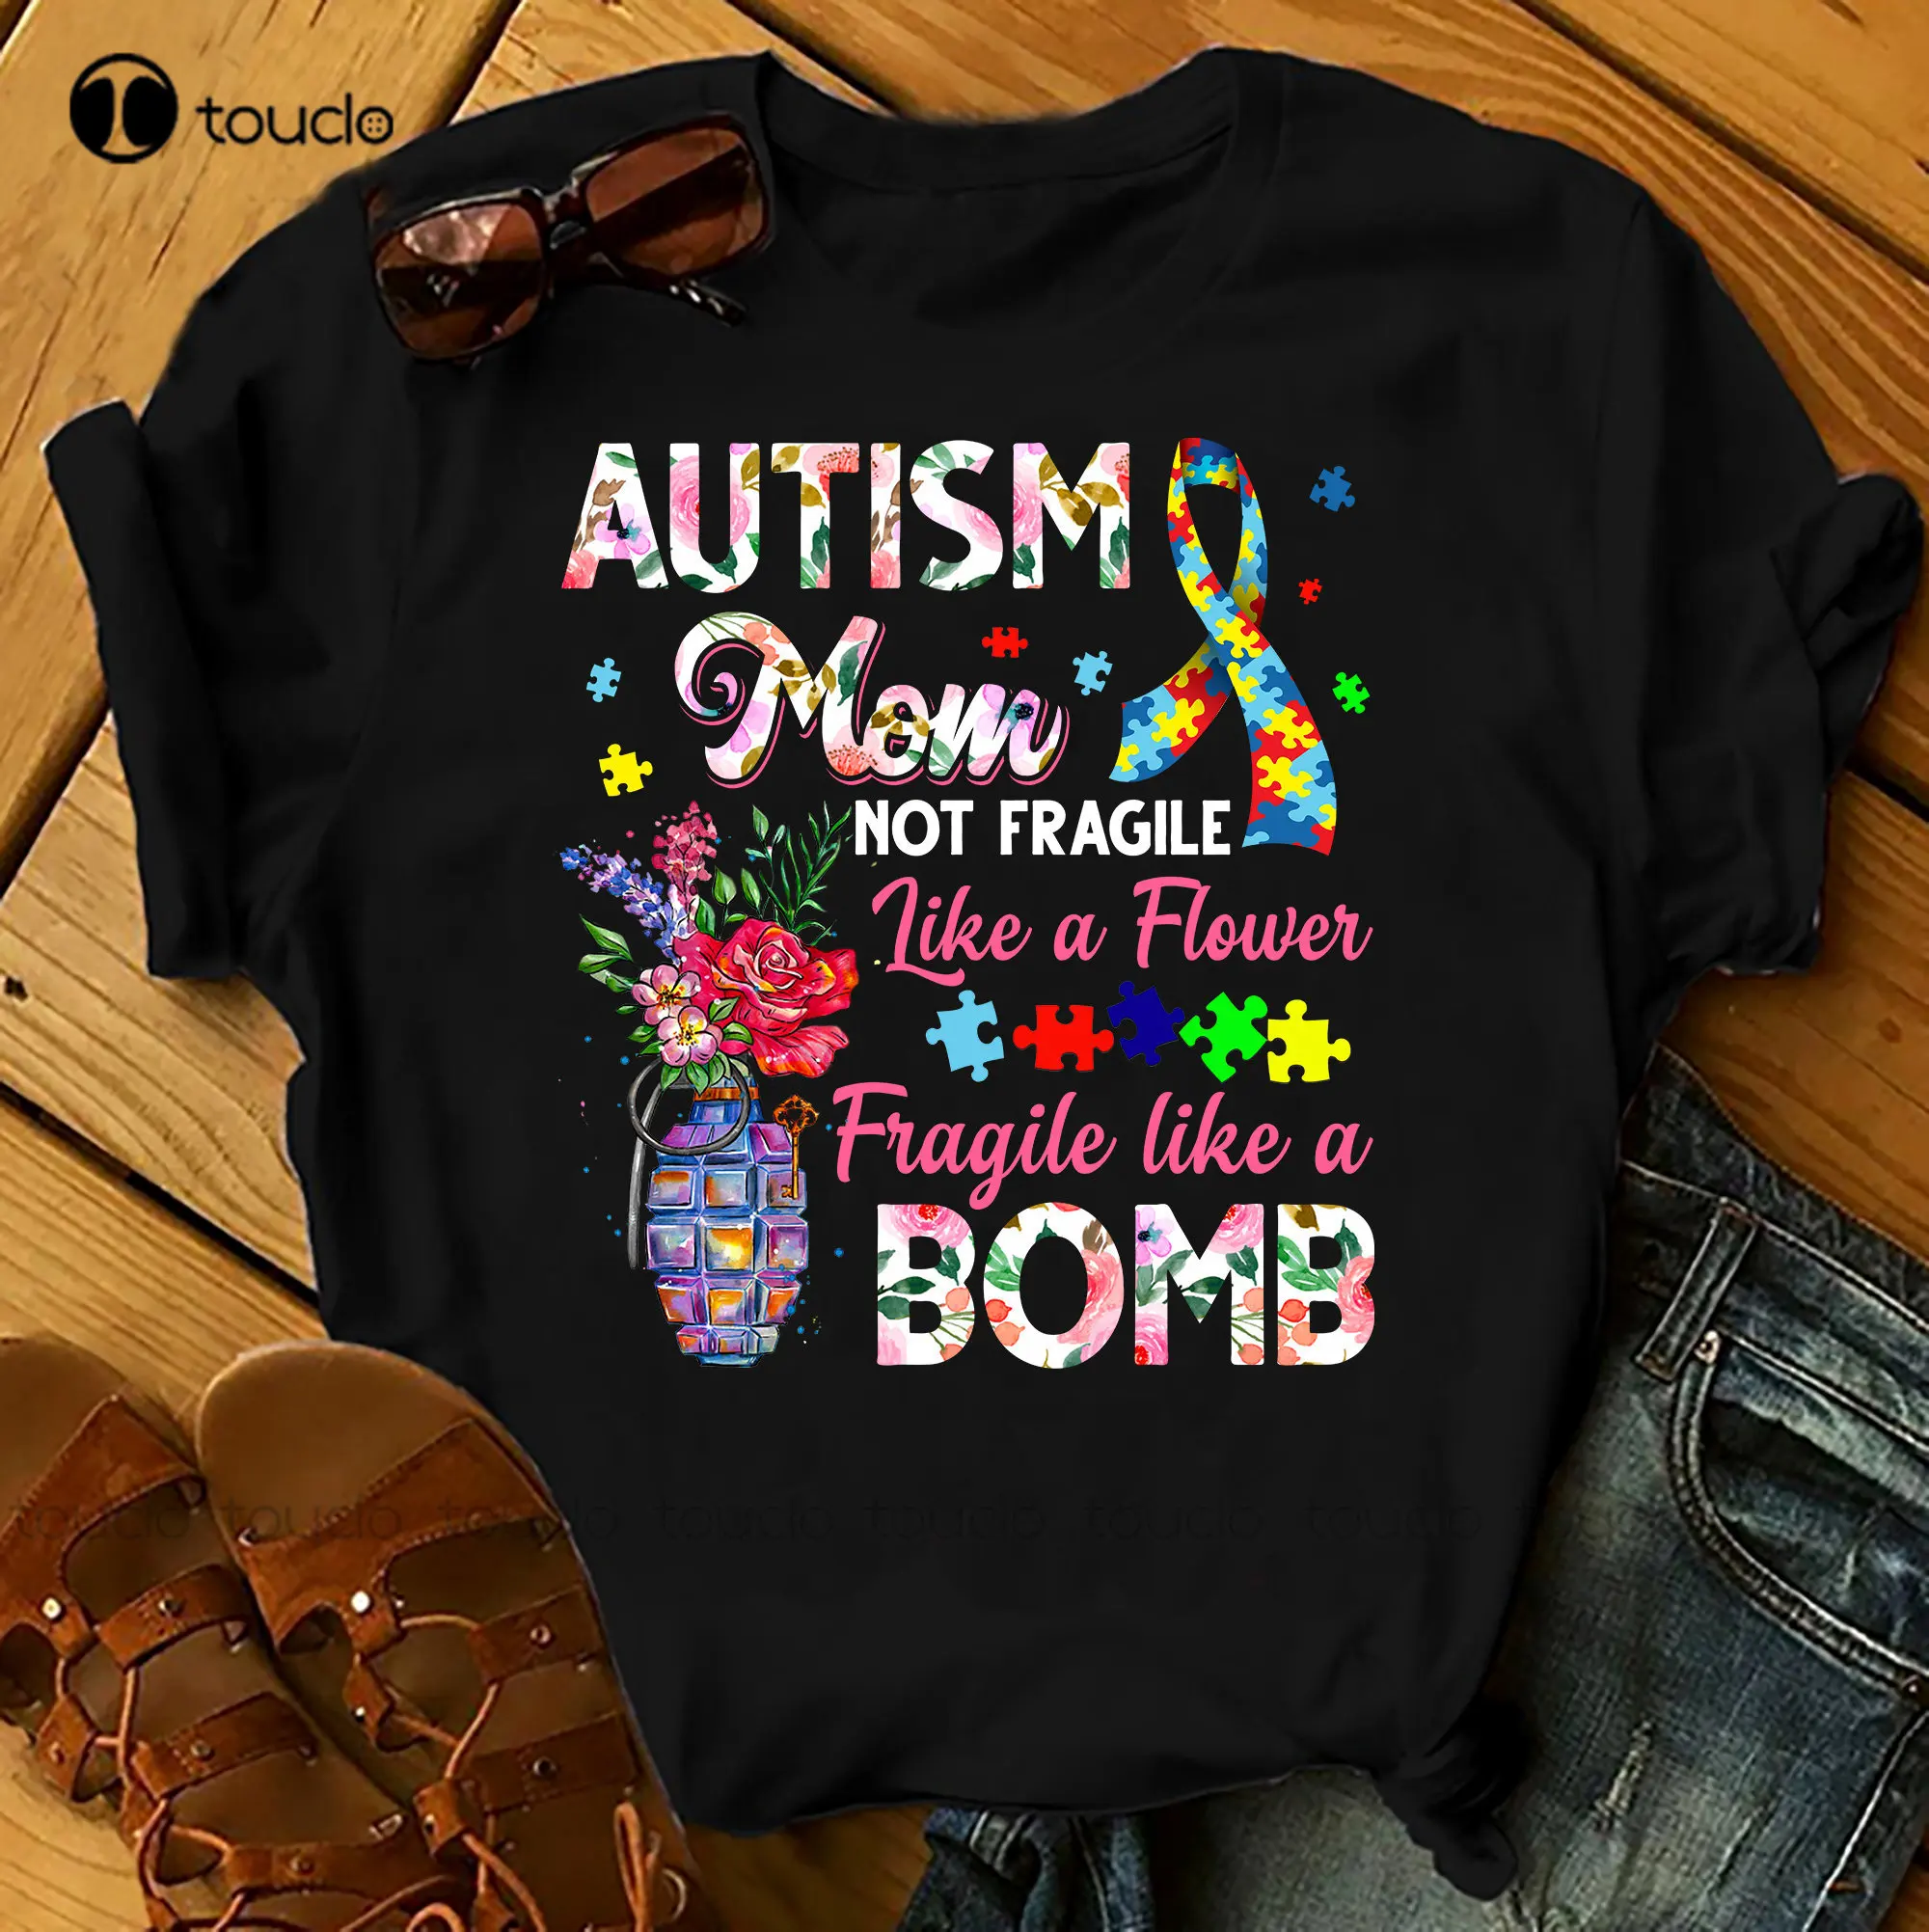 

Футболки с аутизмом, мамой, хрупкой, как бомба-аутизм, мужские, женские, детские футболки на день рождения, летние топы, пляжные футболки, женская футболка